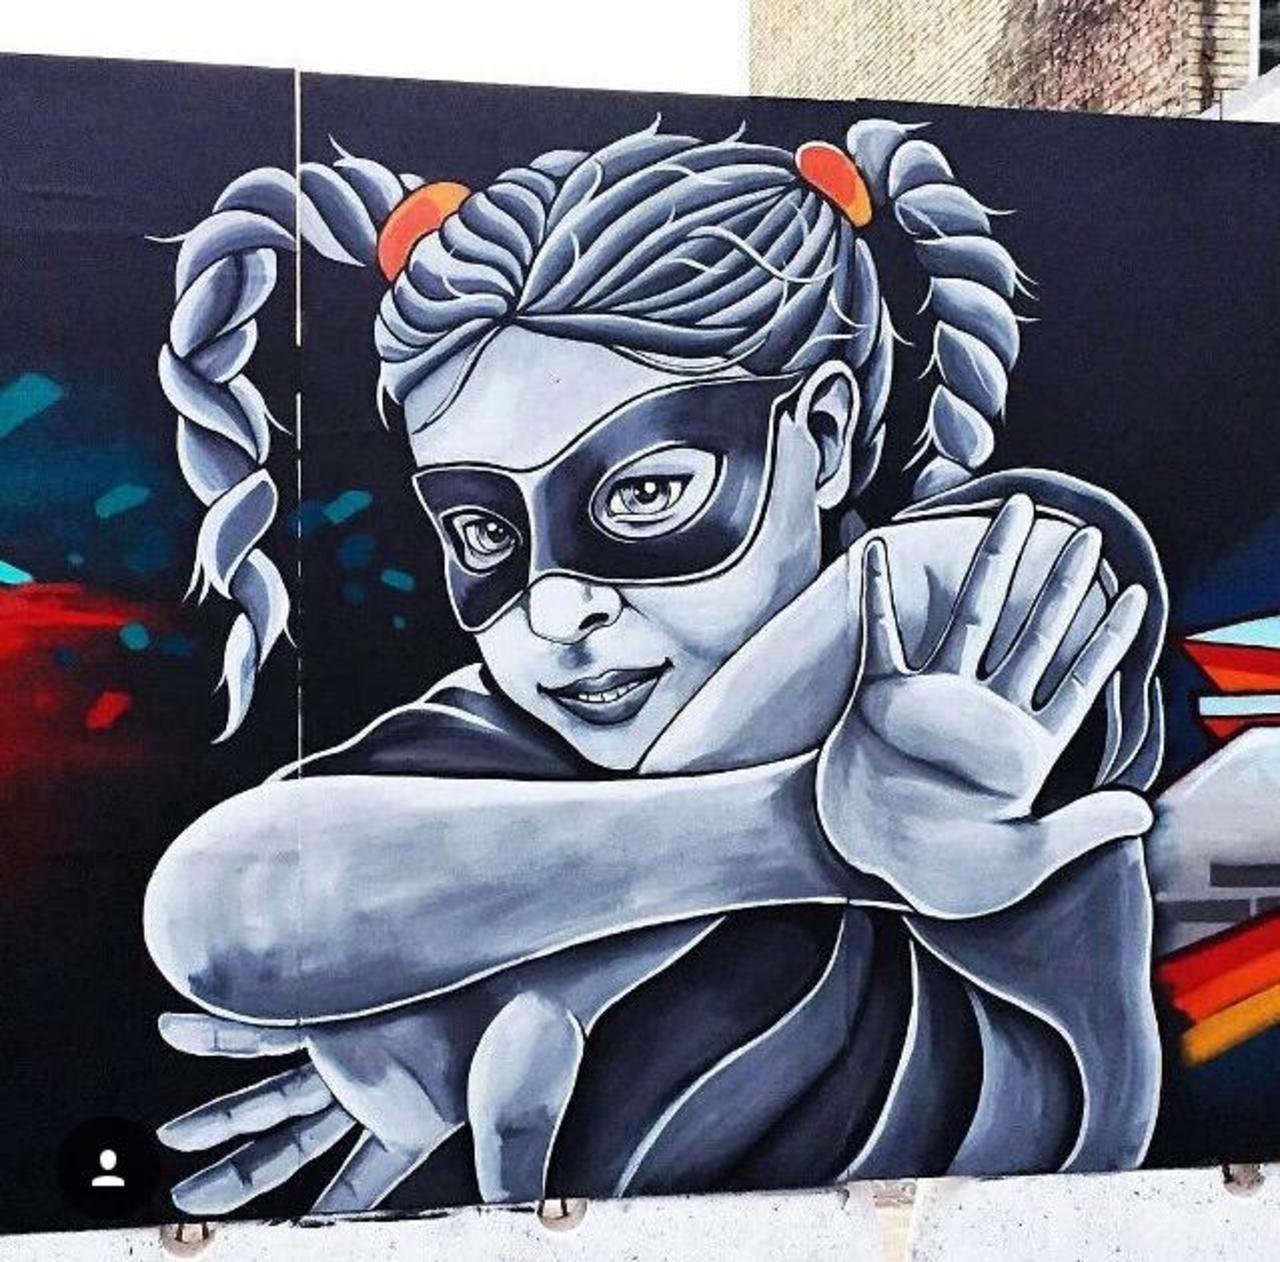 New tumblr post: "New tumblr post: "Street Art by Stinehvid 

#art #graffiti #mural #streetart http://t.co/BLLK9U3Rdh" …